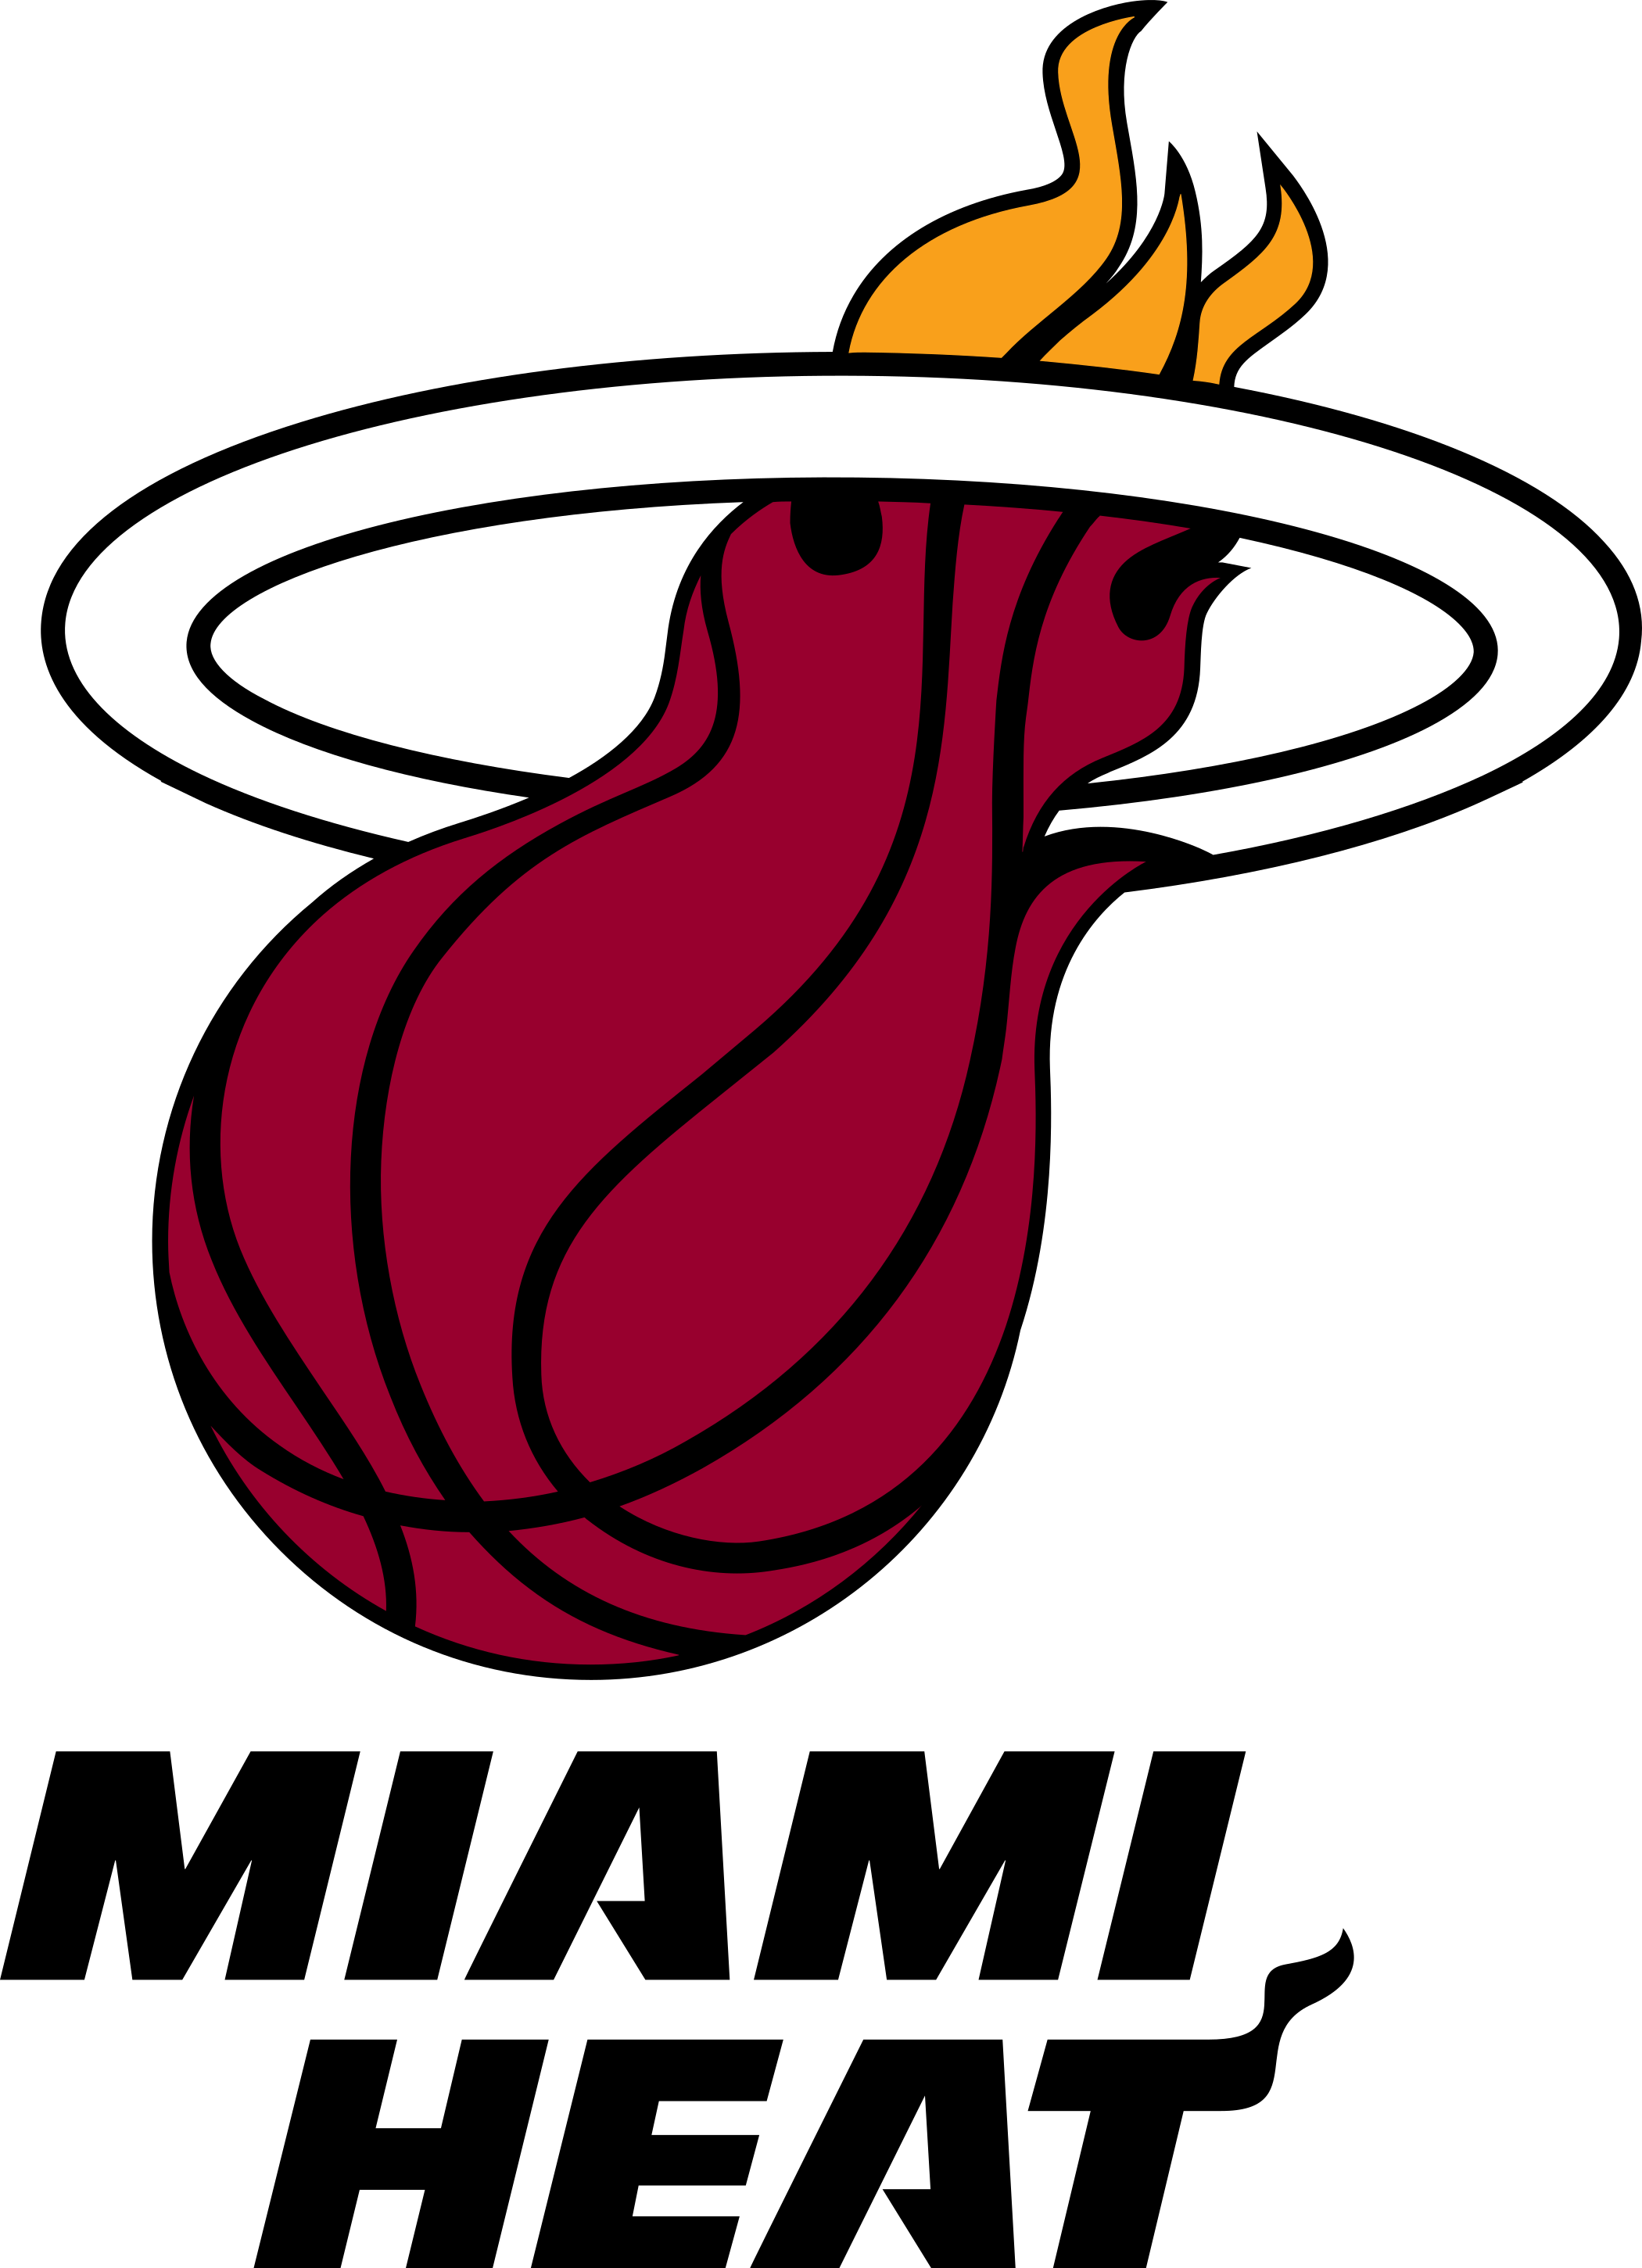 miami heat logo 1 - Miami Heat Logo